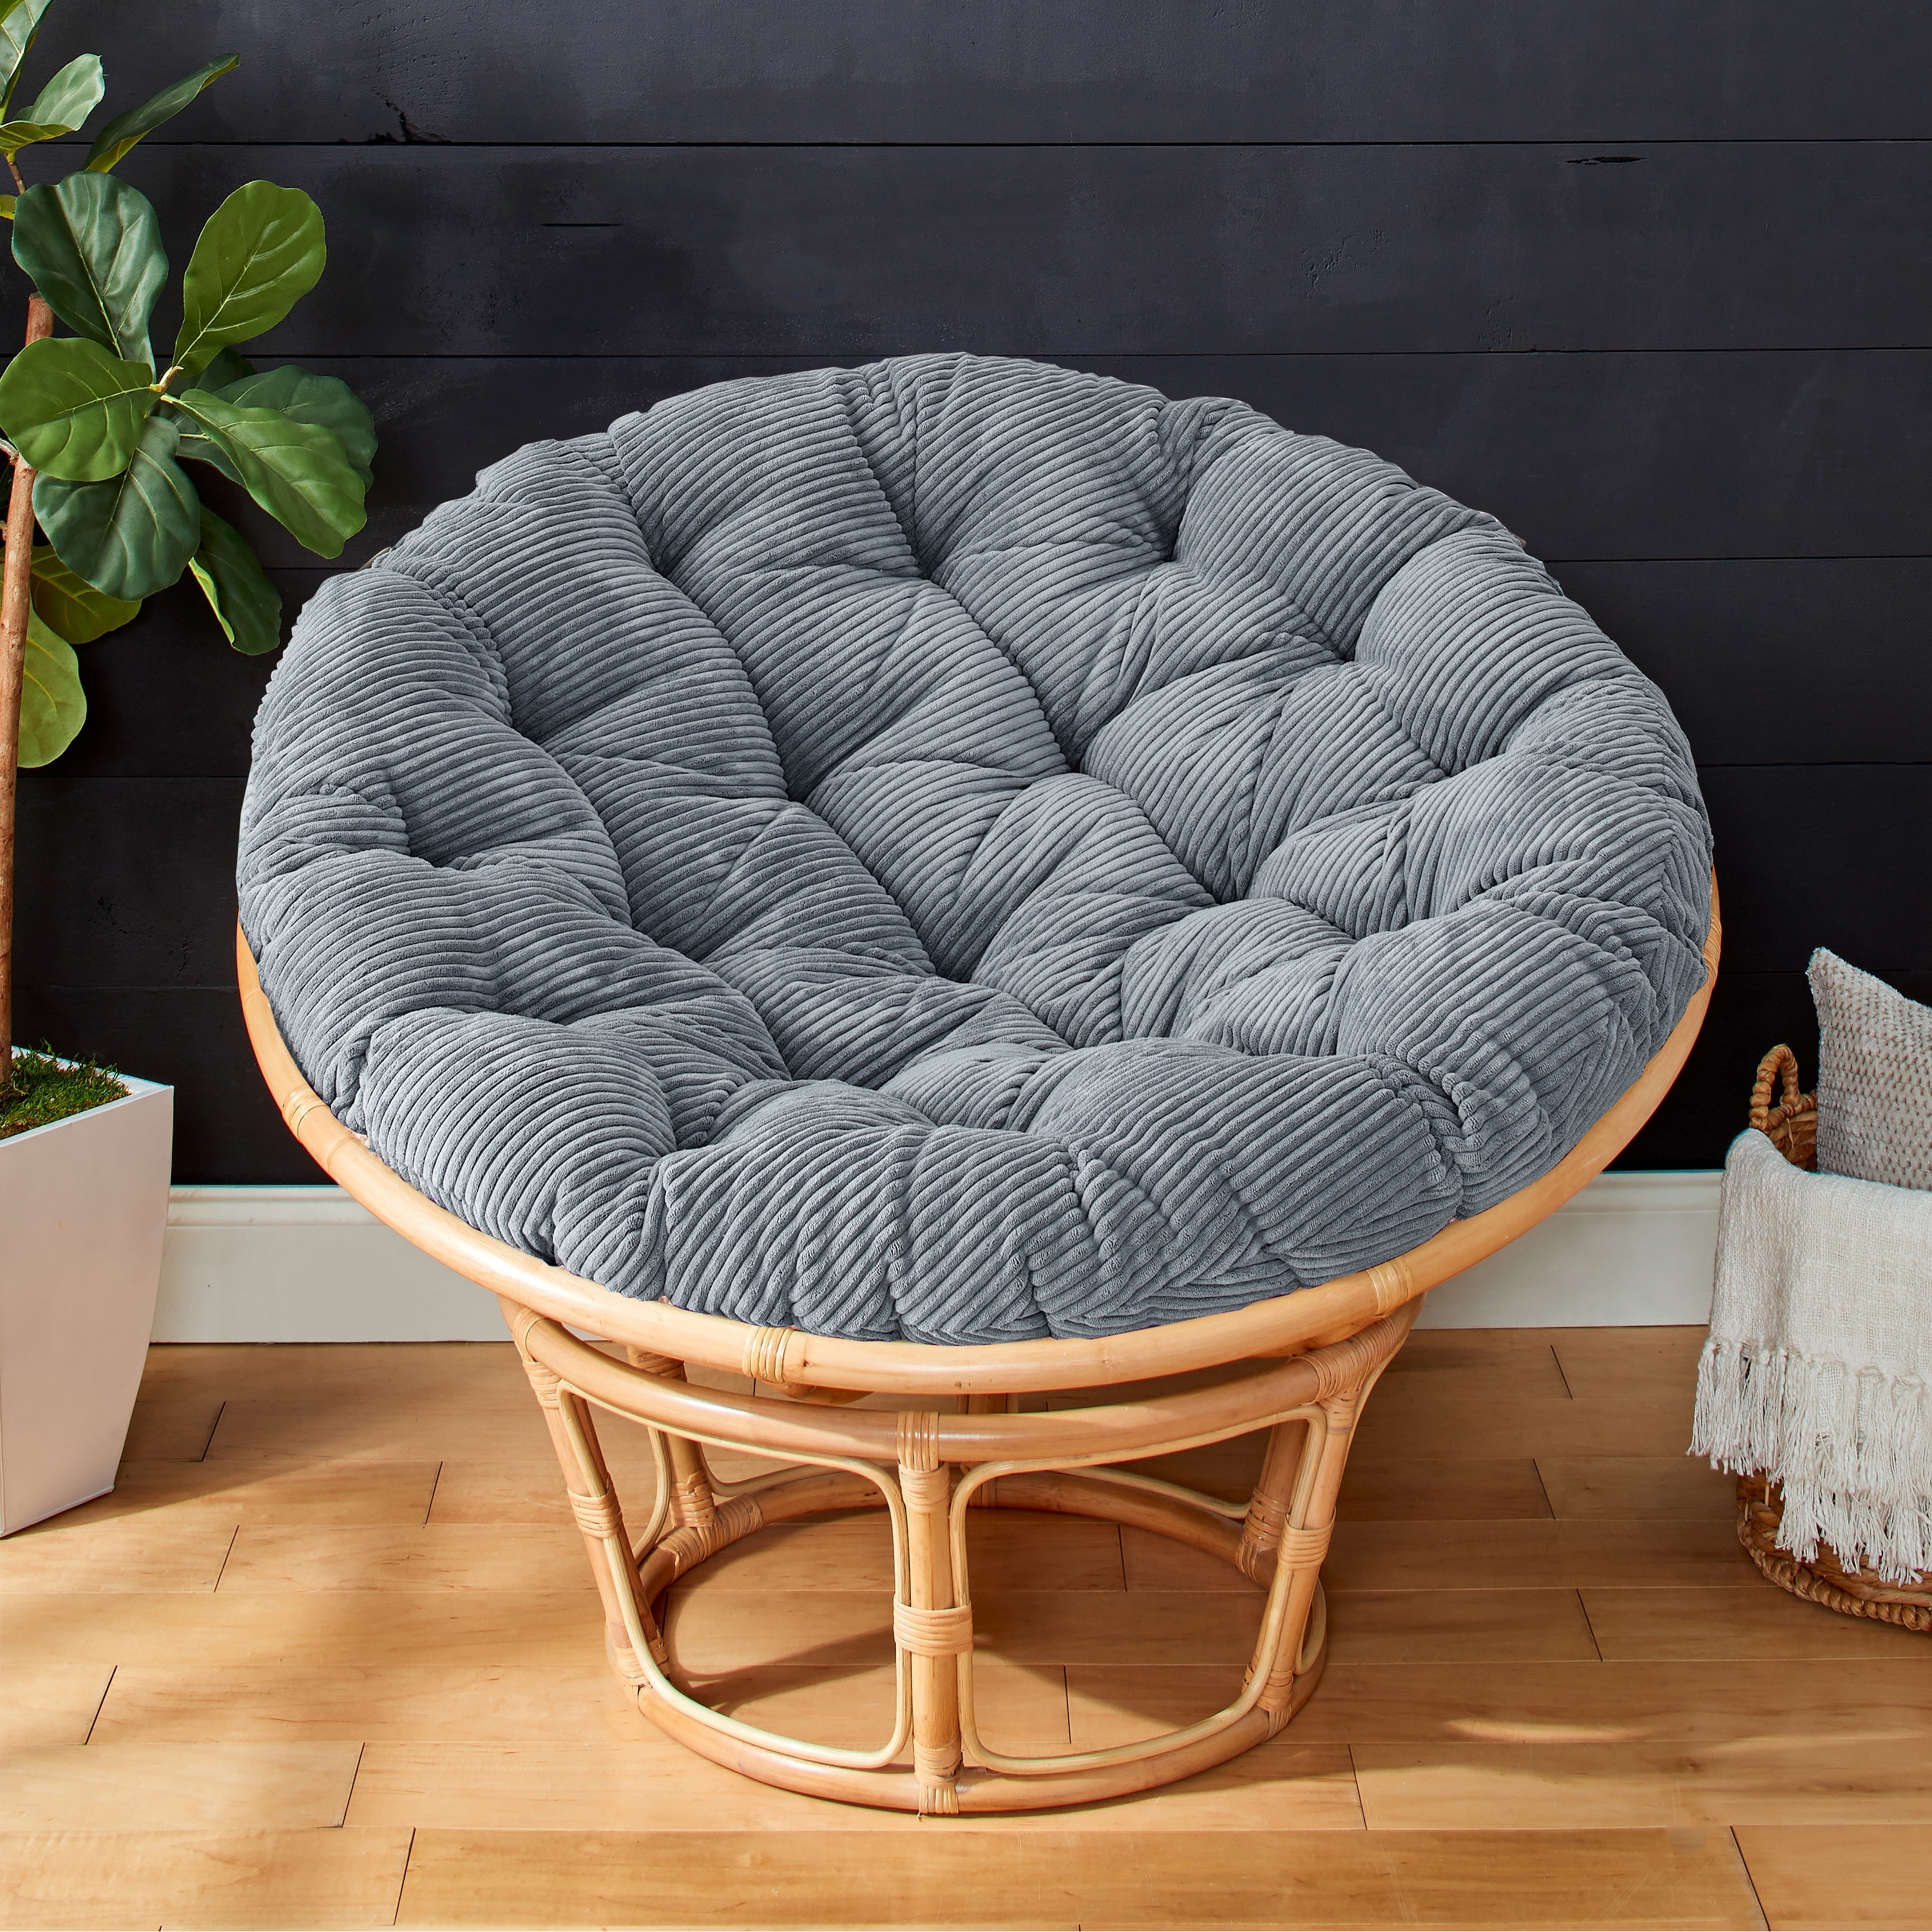 44 x 44 x 4 Papasan Outdoor Chair Cushion Ivory - Sorra Home